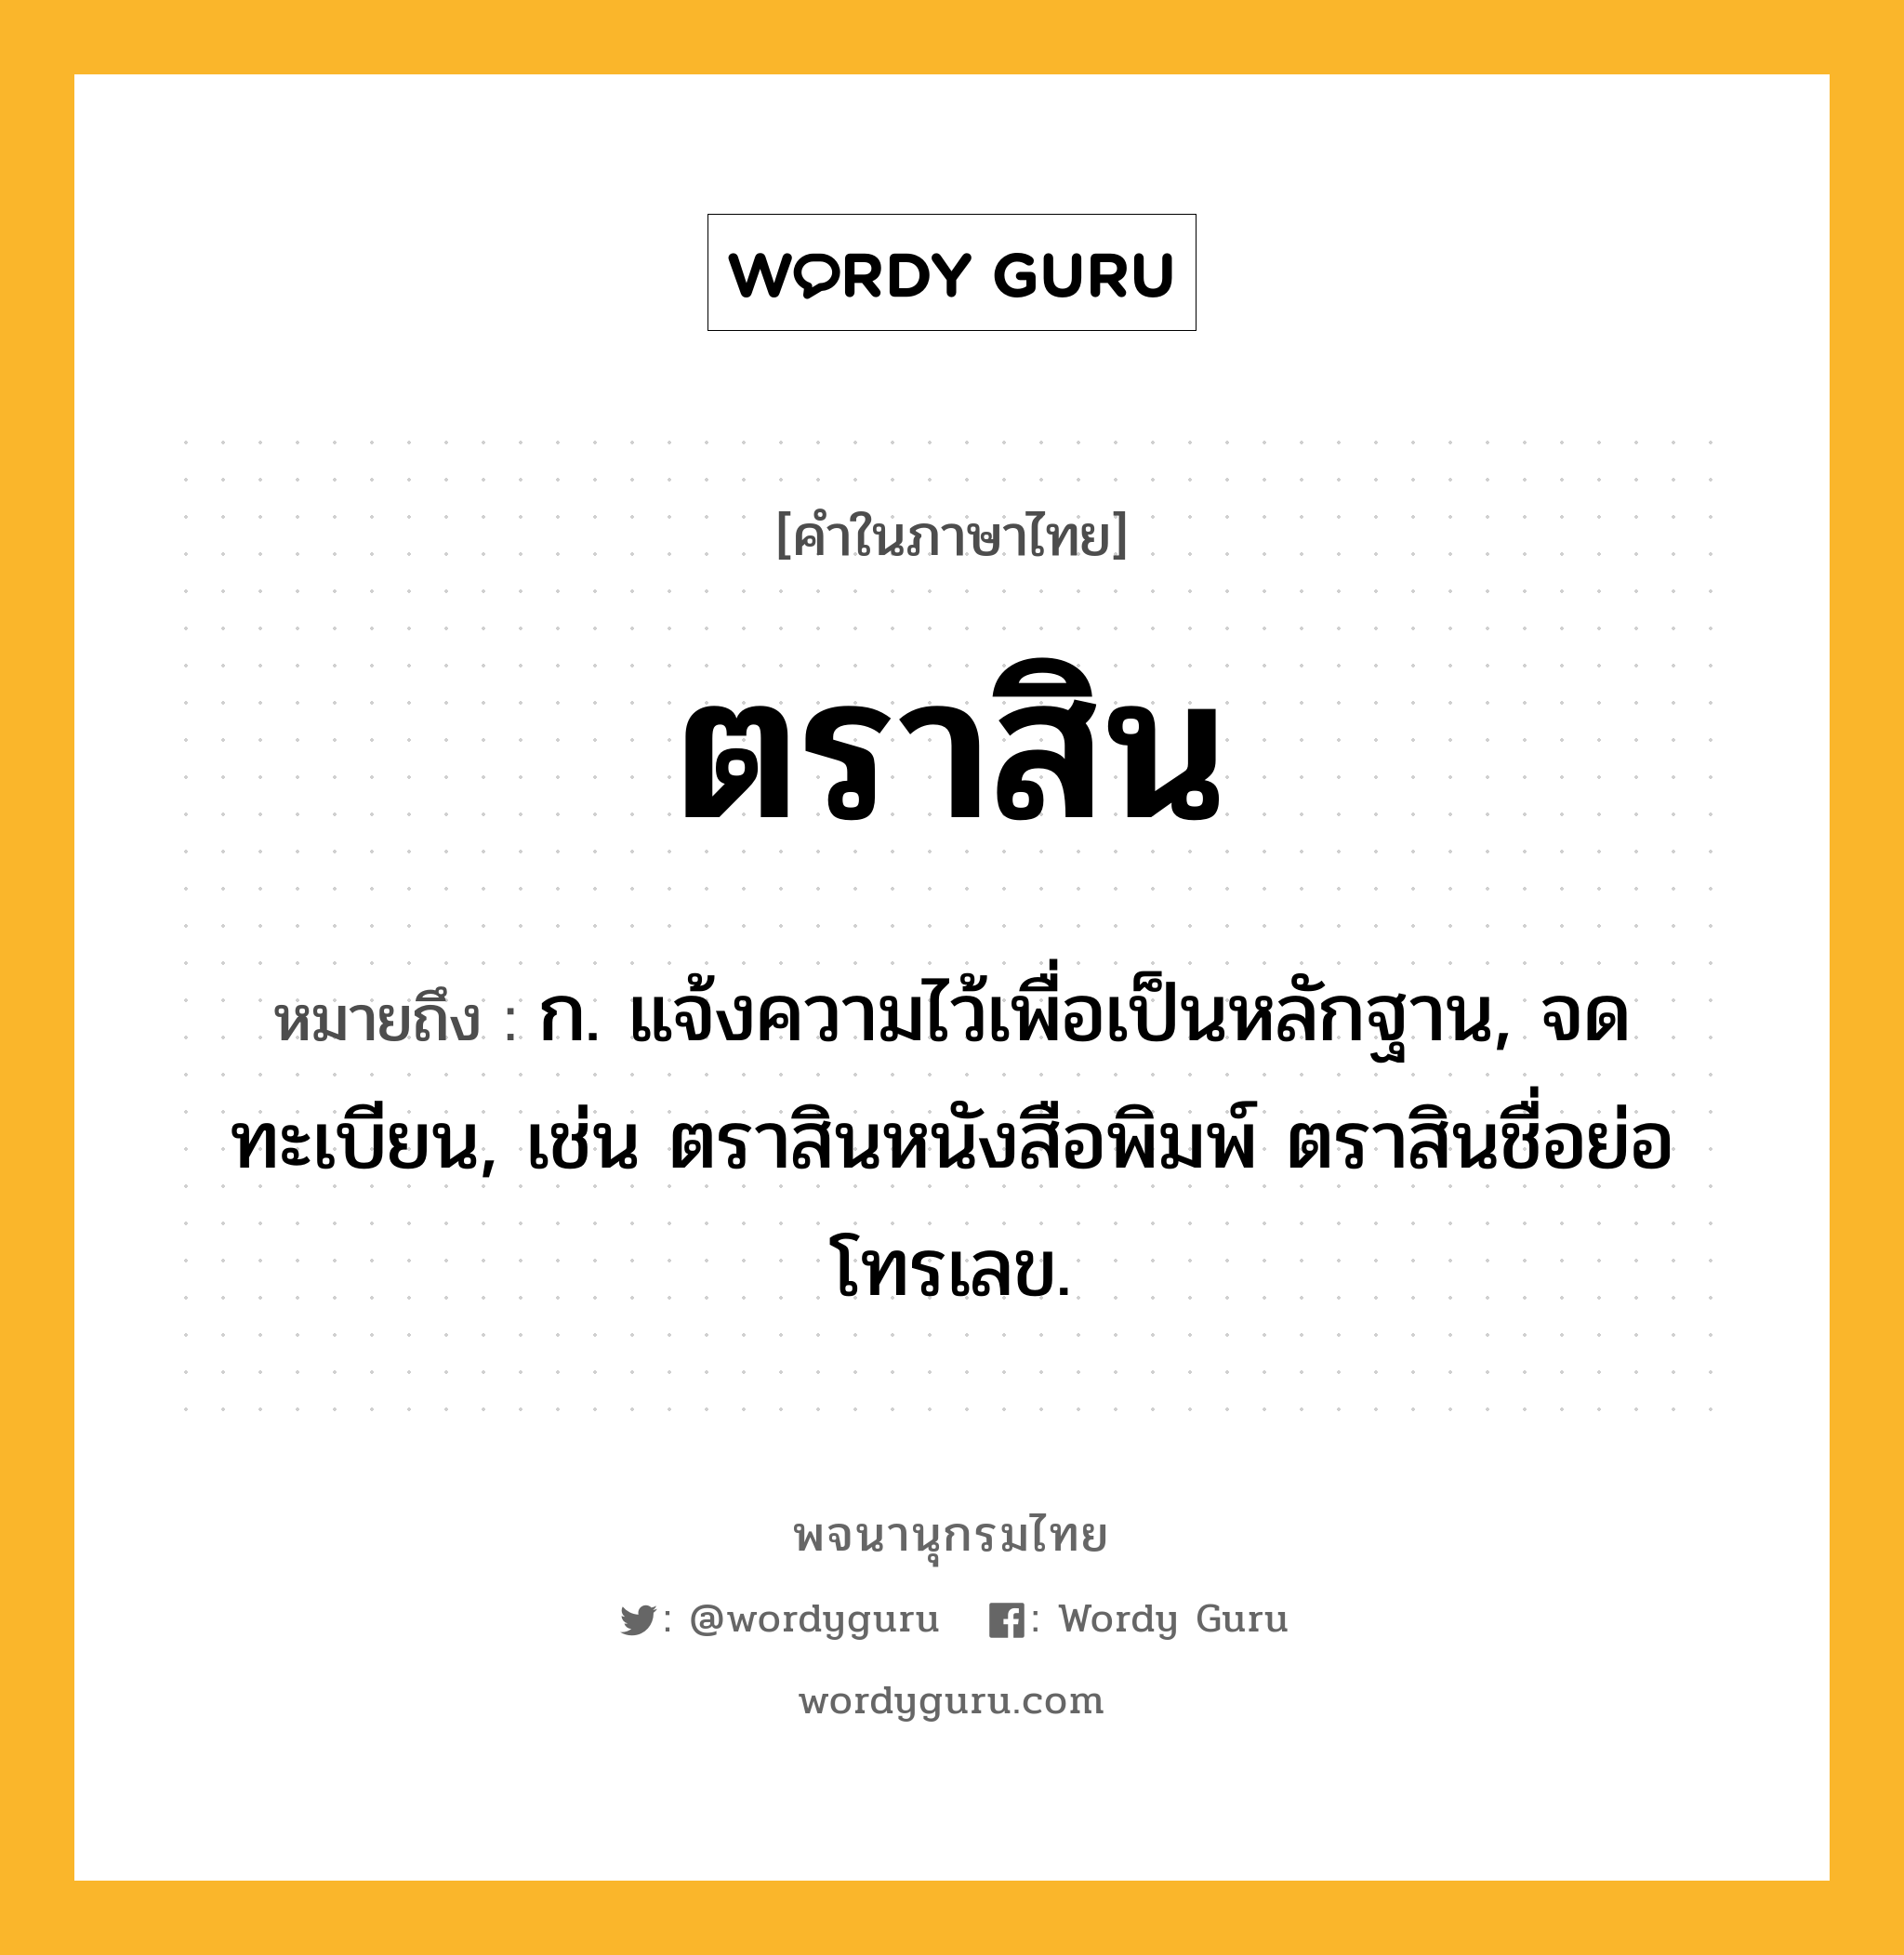 ตราสิน หมายถึงอะไร?, คำในภาษาไทย ตราสิน หมายถึง ก. แจ้งความไว้เพื่อเป็นหลักฐาน, จดทะเบียน, เช่น ตราสินหนังสือพิมพ์ ตราสินชื่อย่อโทรเลข.